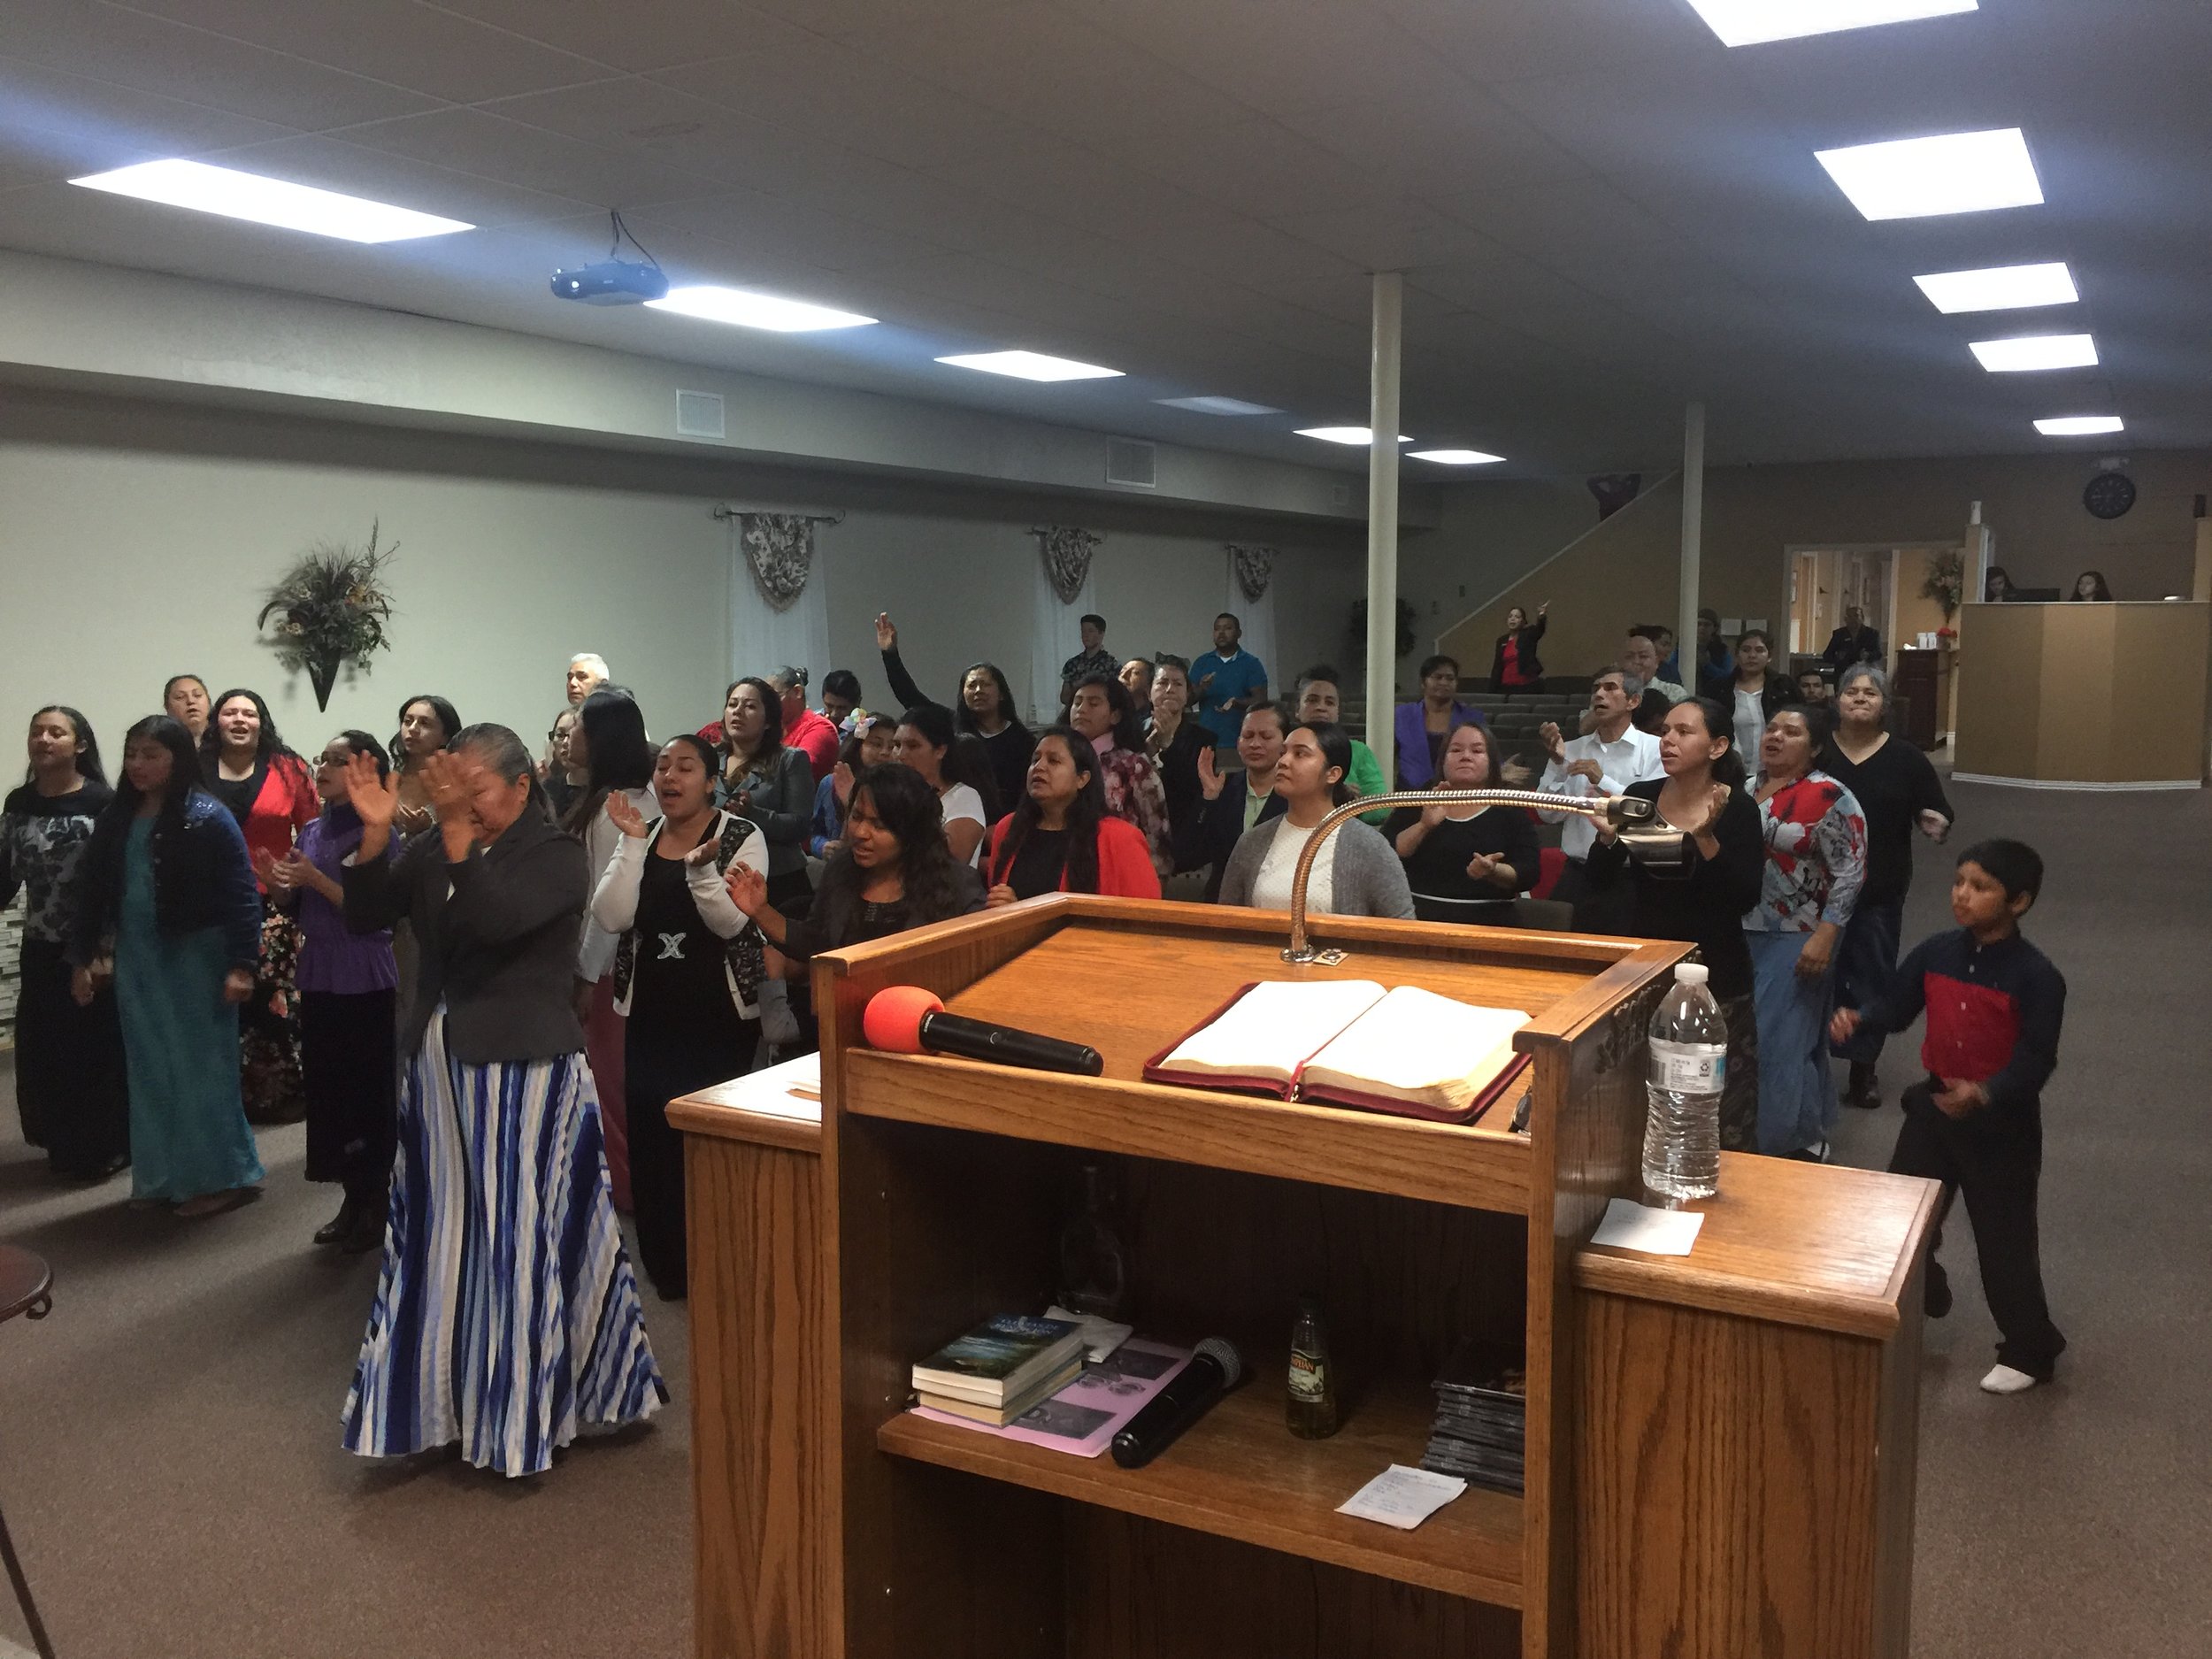 Gran Culto de Jovenes para La gloria de Dios en Garland, Texas